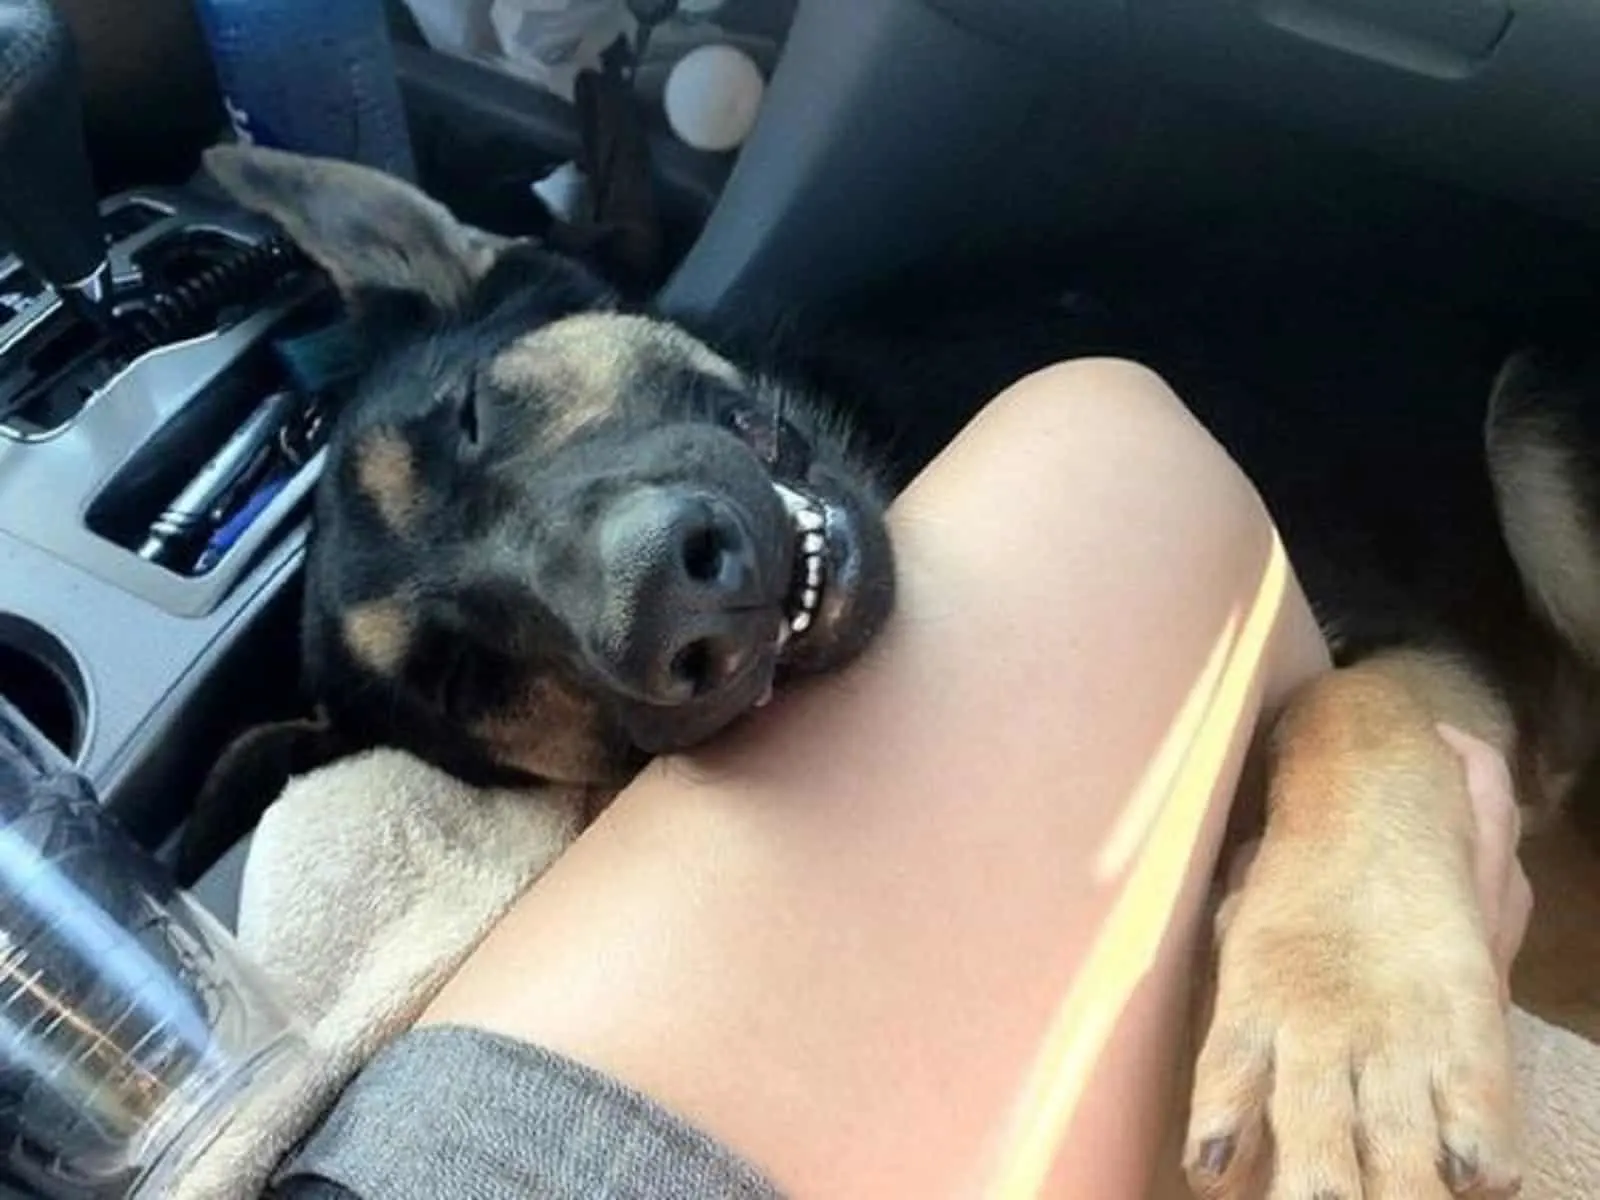 german shepherd dog sleeping in the car embracing his owner's leg